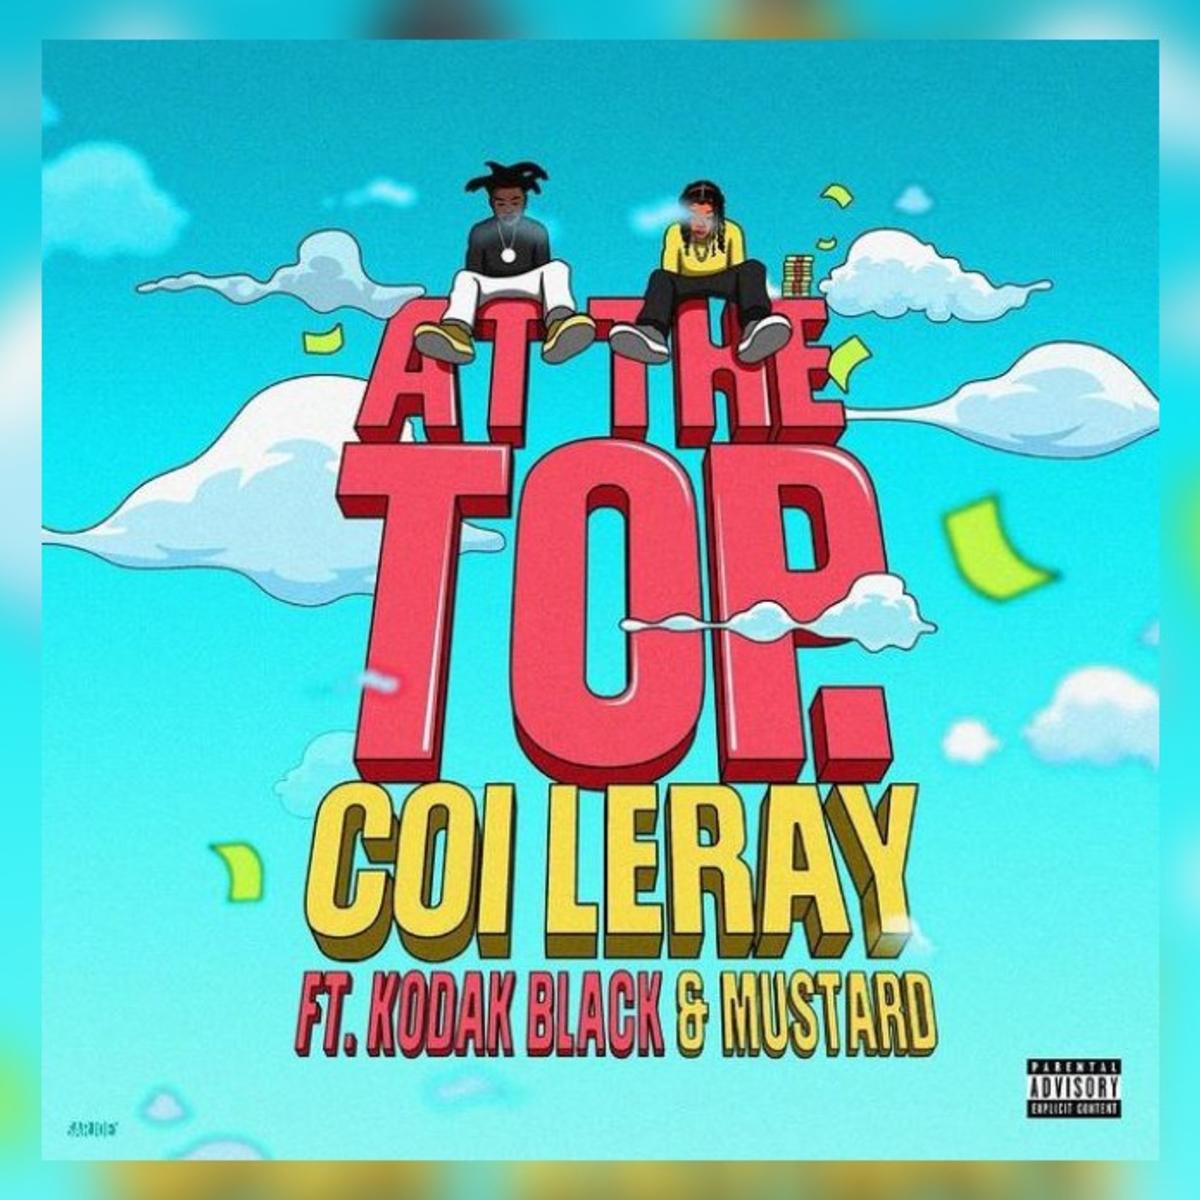 Coi Leray Feat. Kodak Black & Mustard – “At The Top” [Audio]